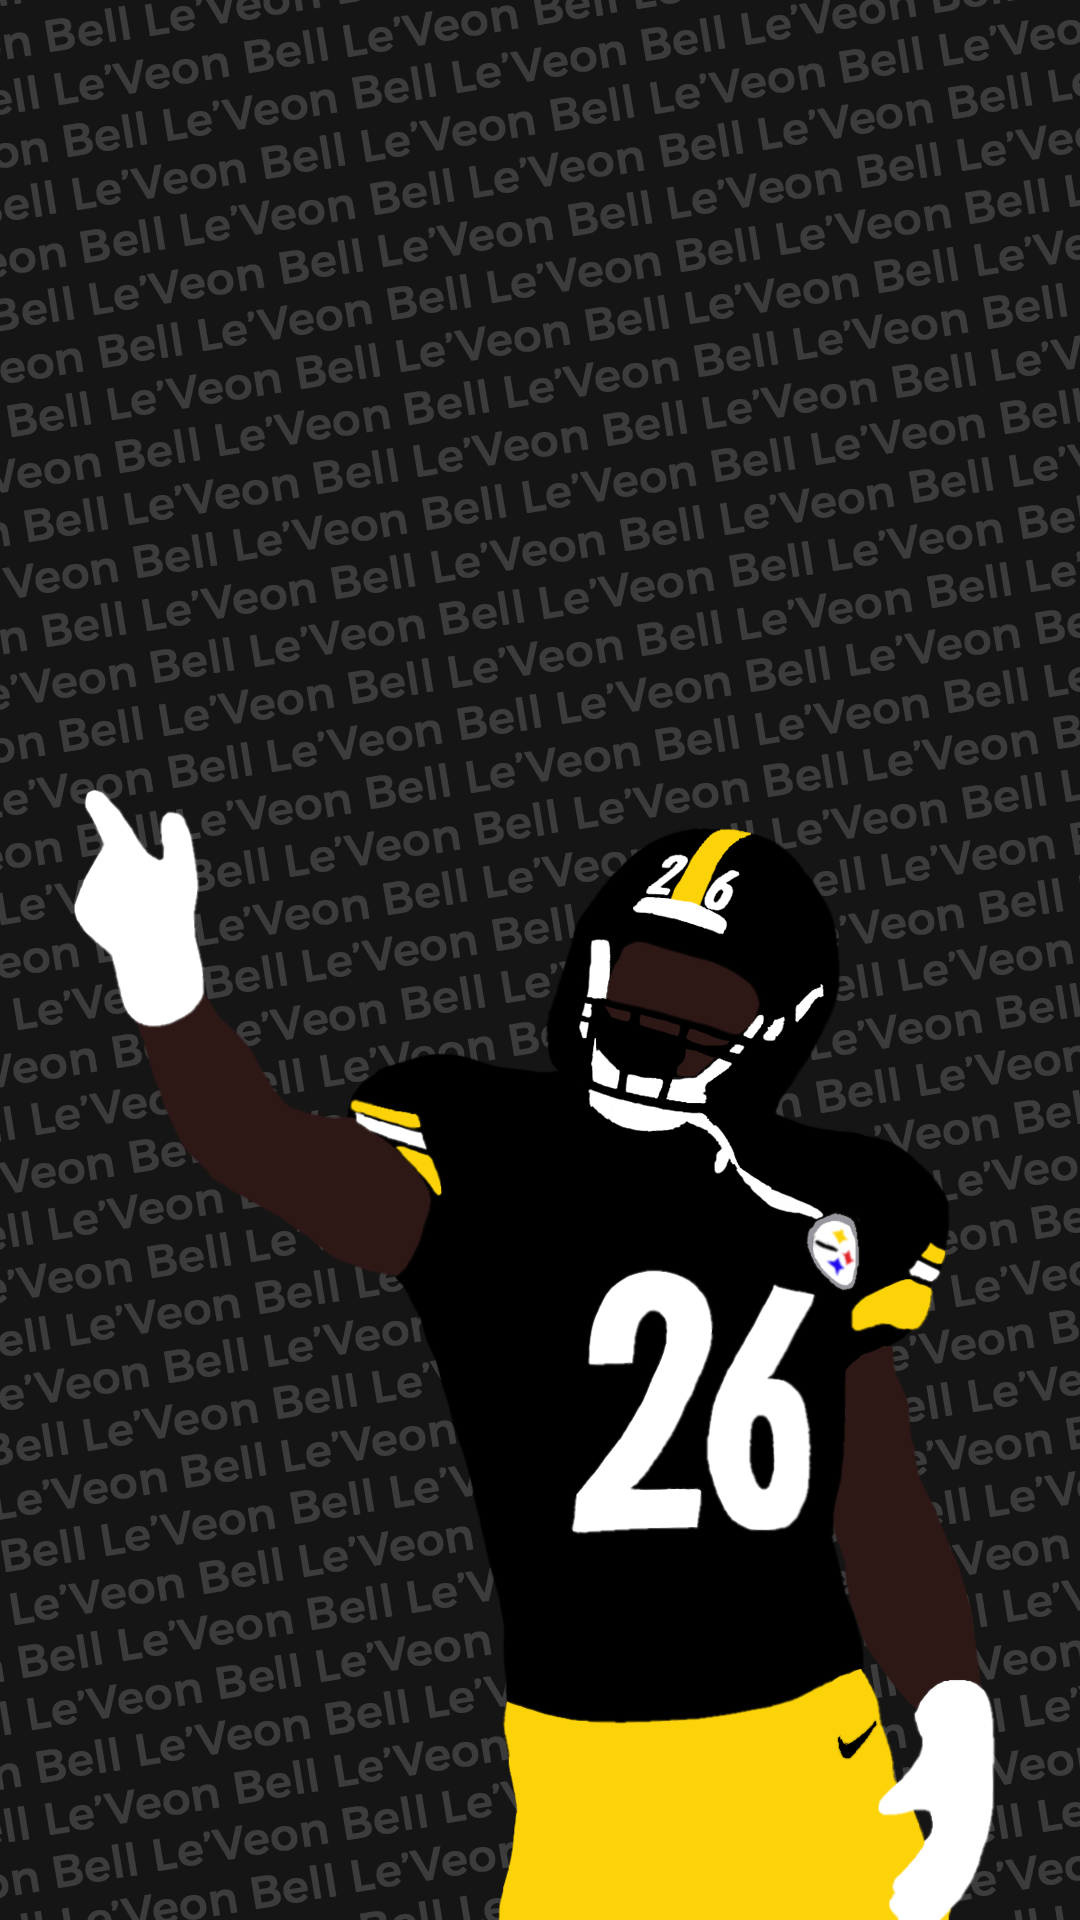 Pittsburgh Steelers Wallpaper by Jdot2daP on DeviantArt